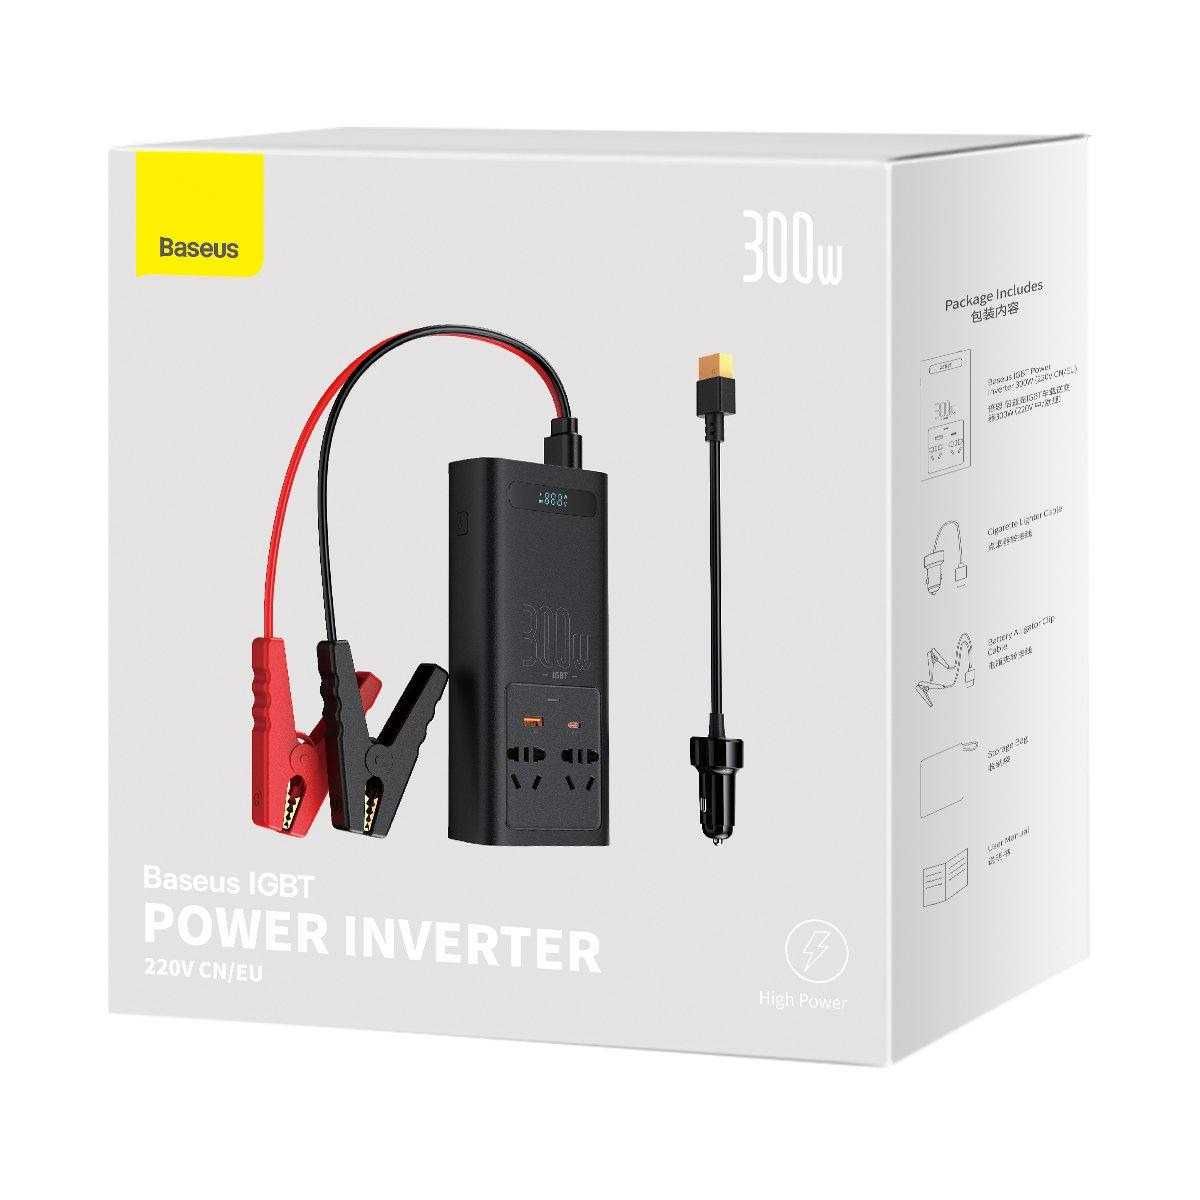 Baseus cgnb010101 Power Inventor 220V / 300W / Автомобильный инвертор